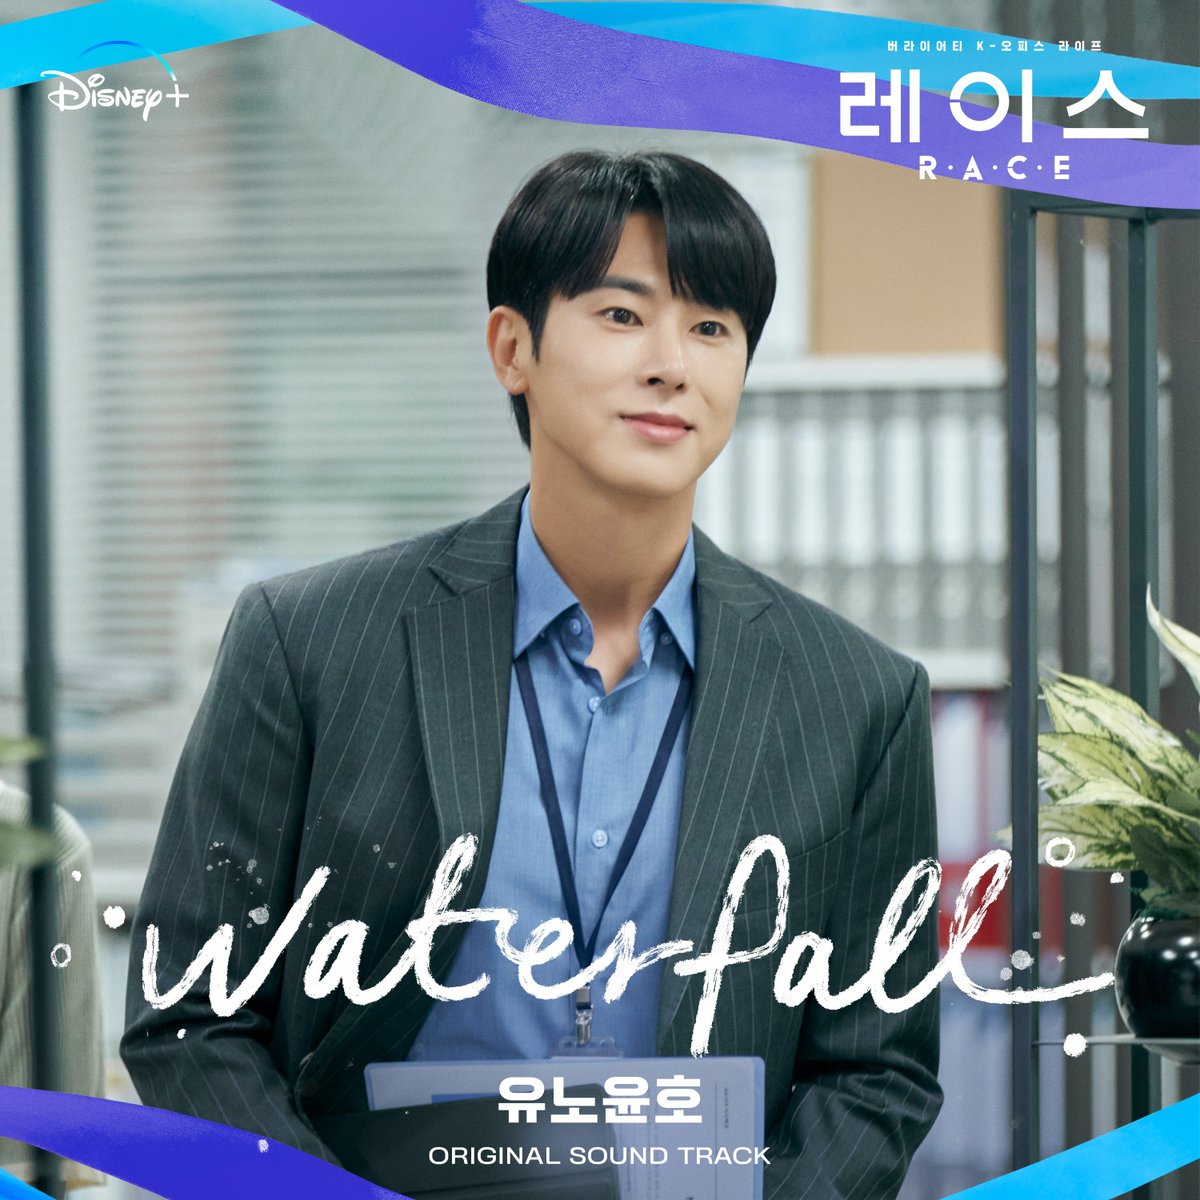 정윤호, '레이스' OST 참여…오늘(9일) 'Waterfall' 발매 #레이스 #동방신기 #TVXQ #정윤호 #유노윤호 

'레이스'의 OST 'Waterfall'은 오늘 오후 6시 주요 음원사이트를 통해 만나볼 수 있다.
enews.imbc.com/News/RetrieveN…